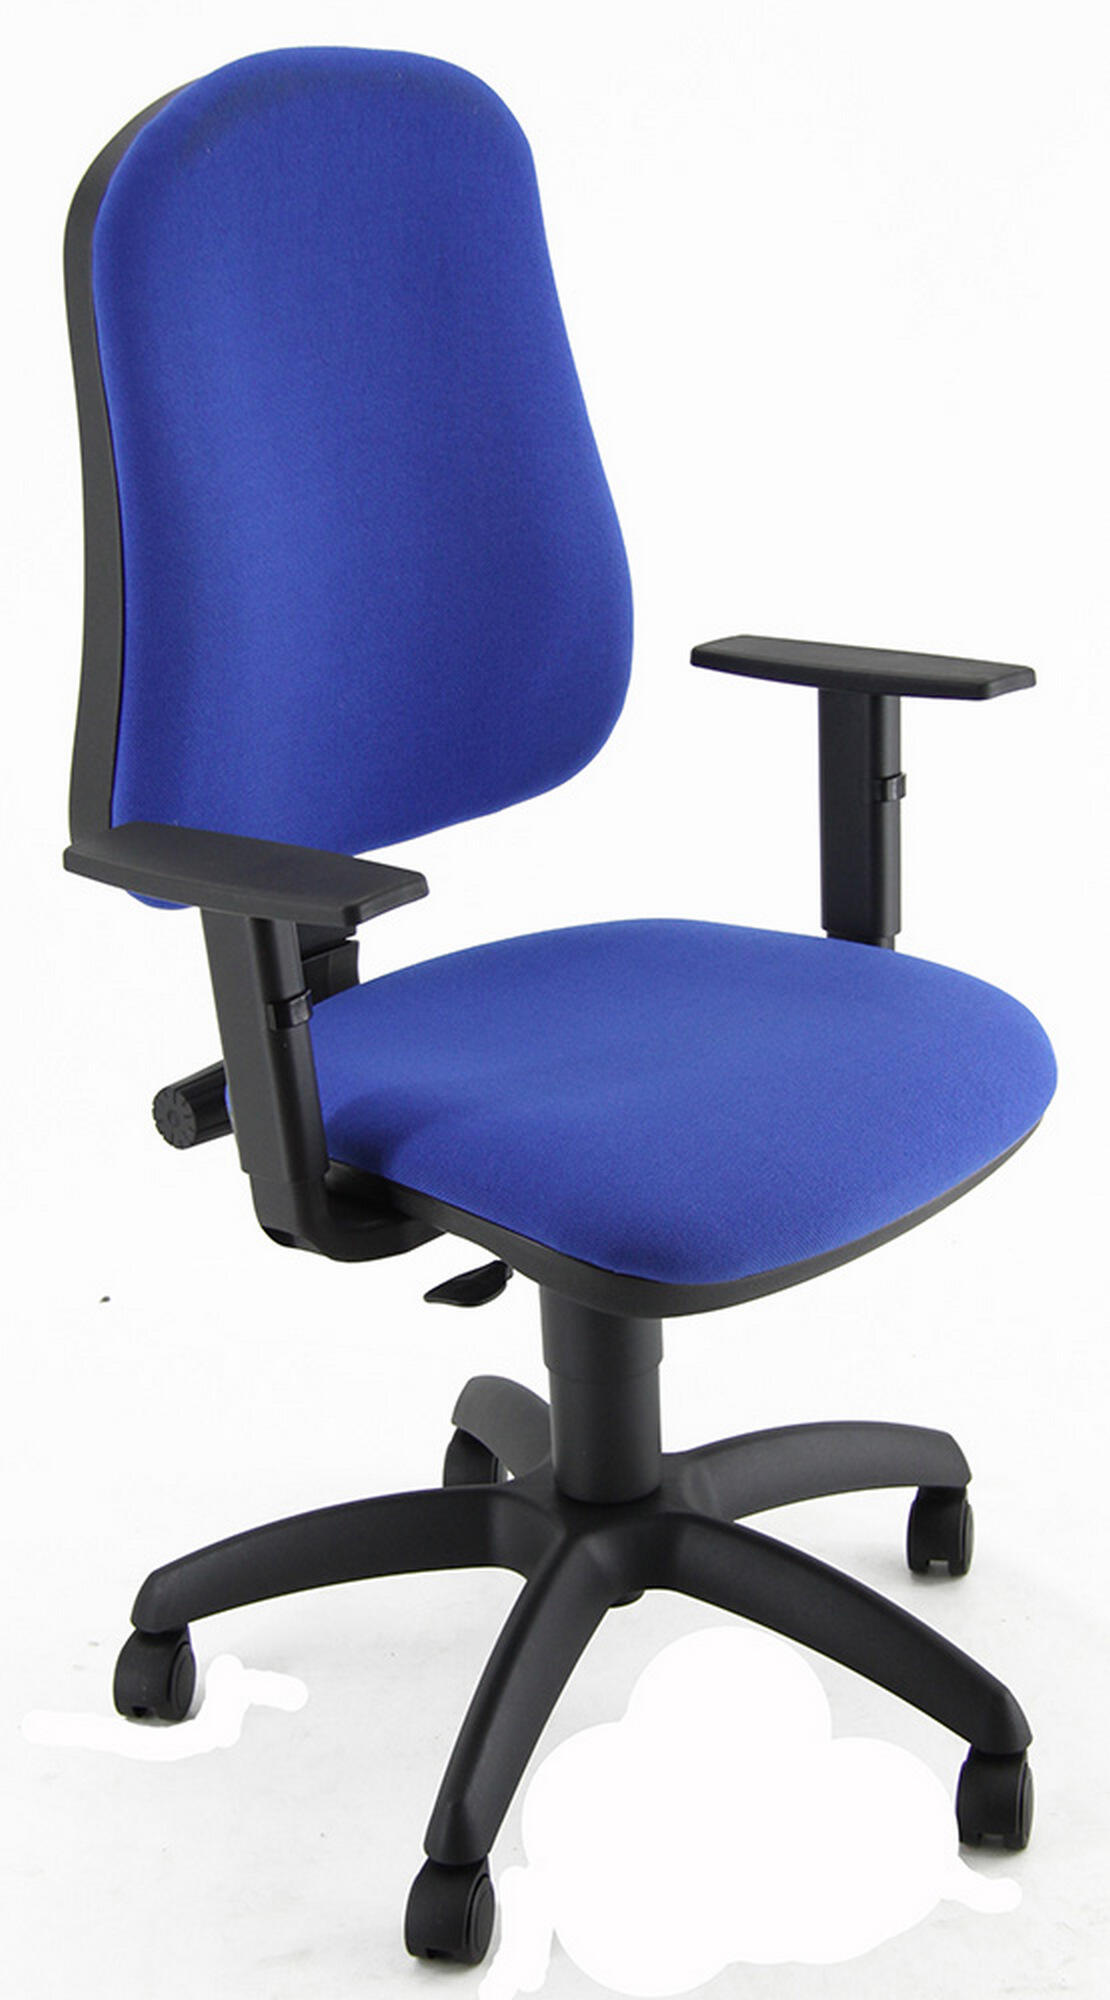 Silla de escritorio simpel color azul con reposabrazos ajustables